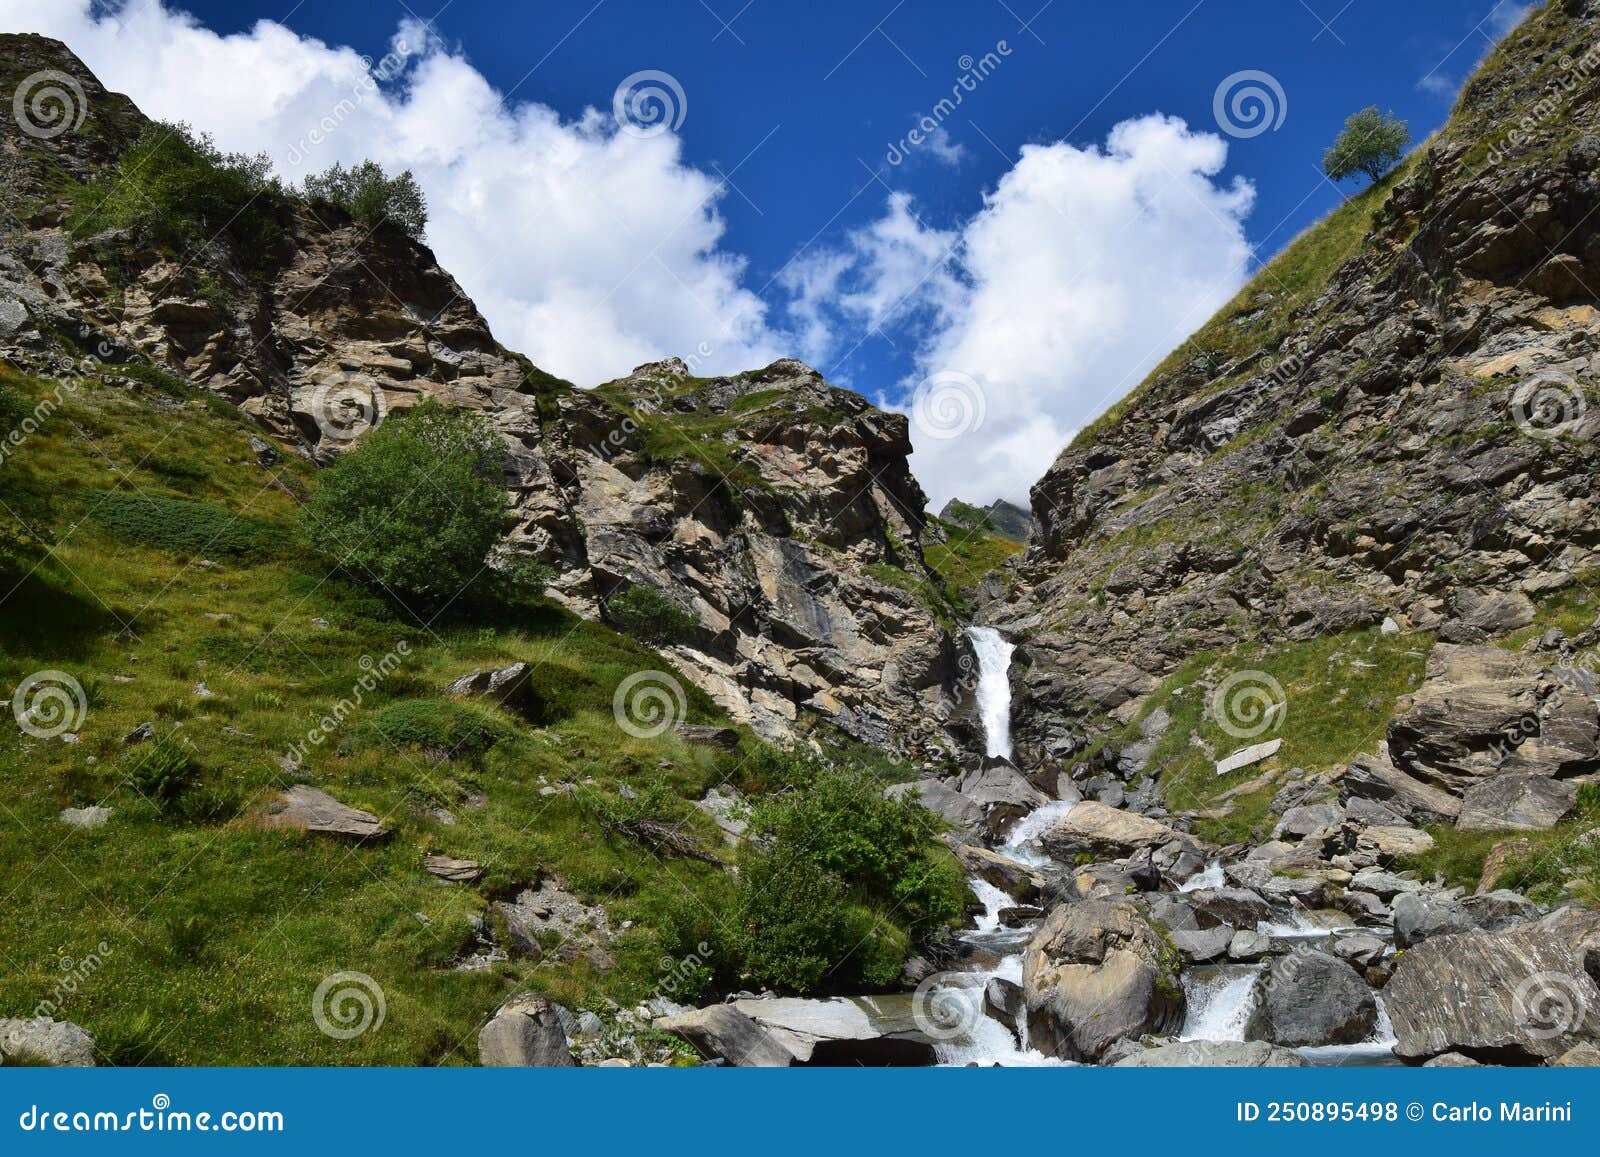 panorama delle alpi, cascata con cielo blu e nuvole bianche